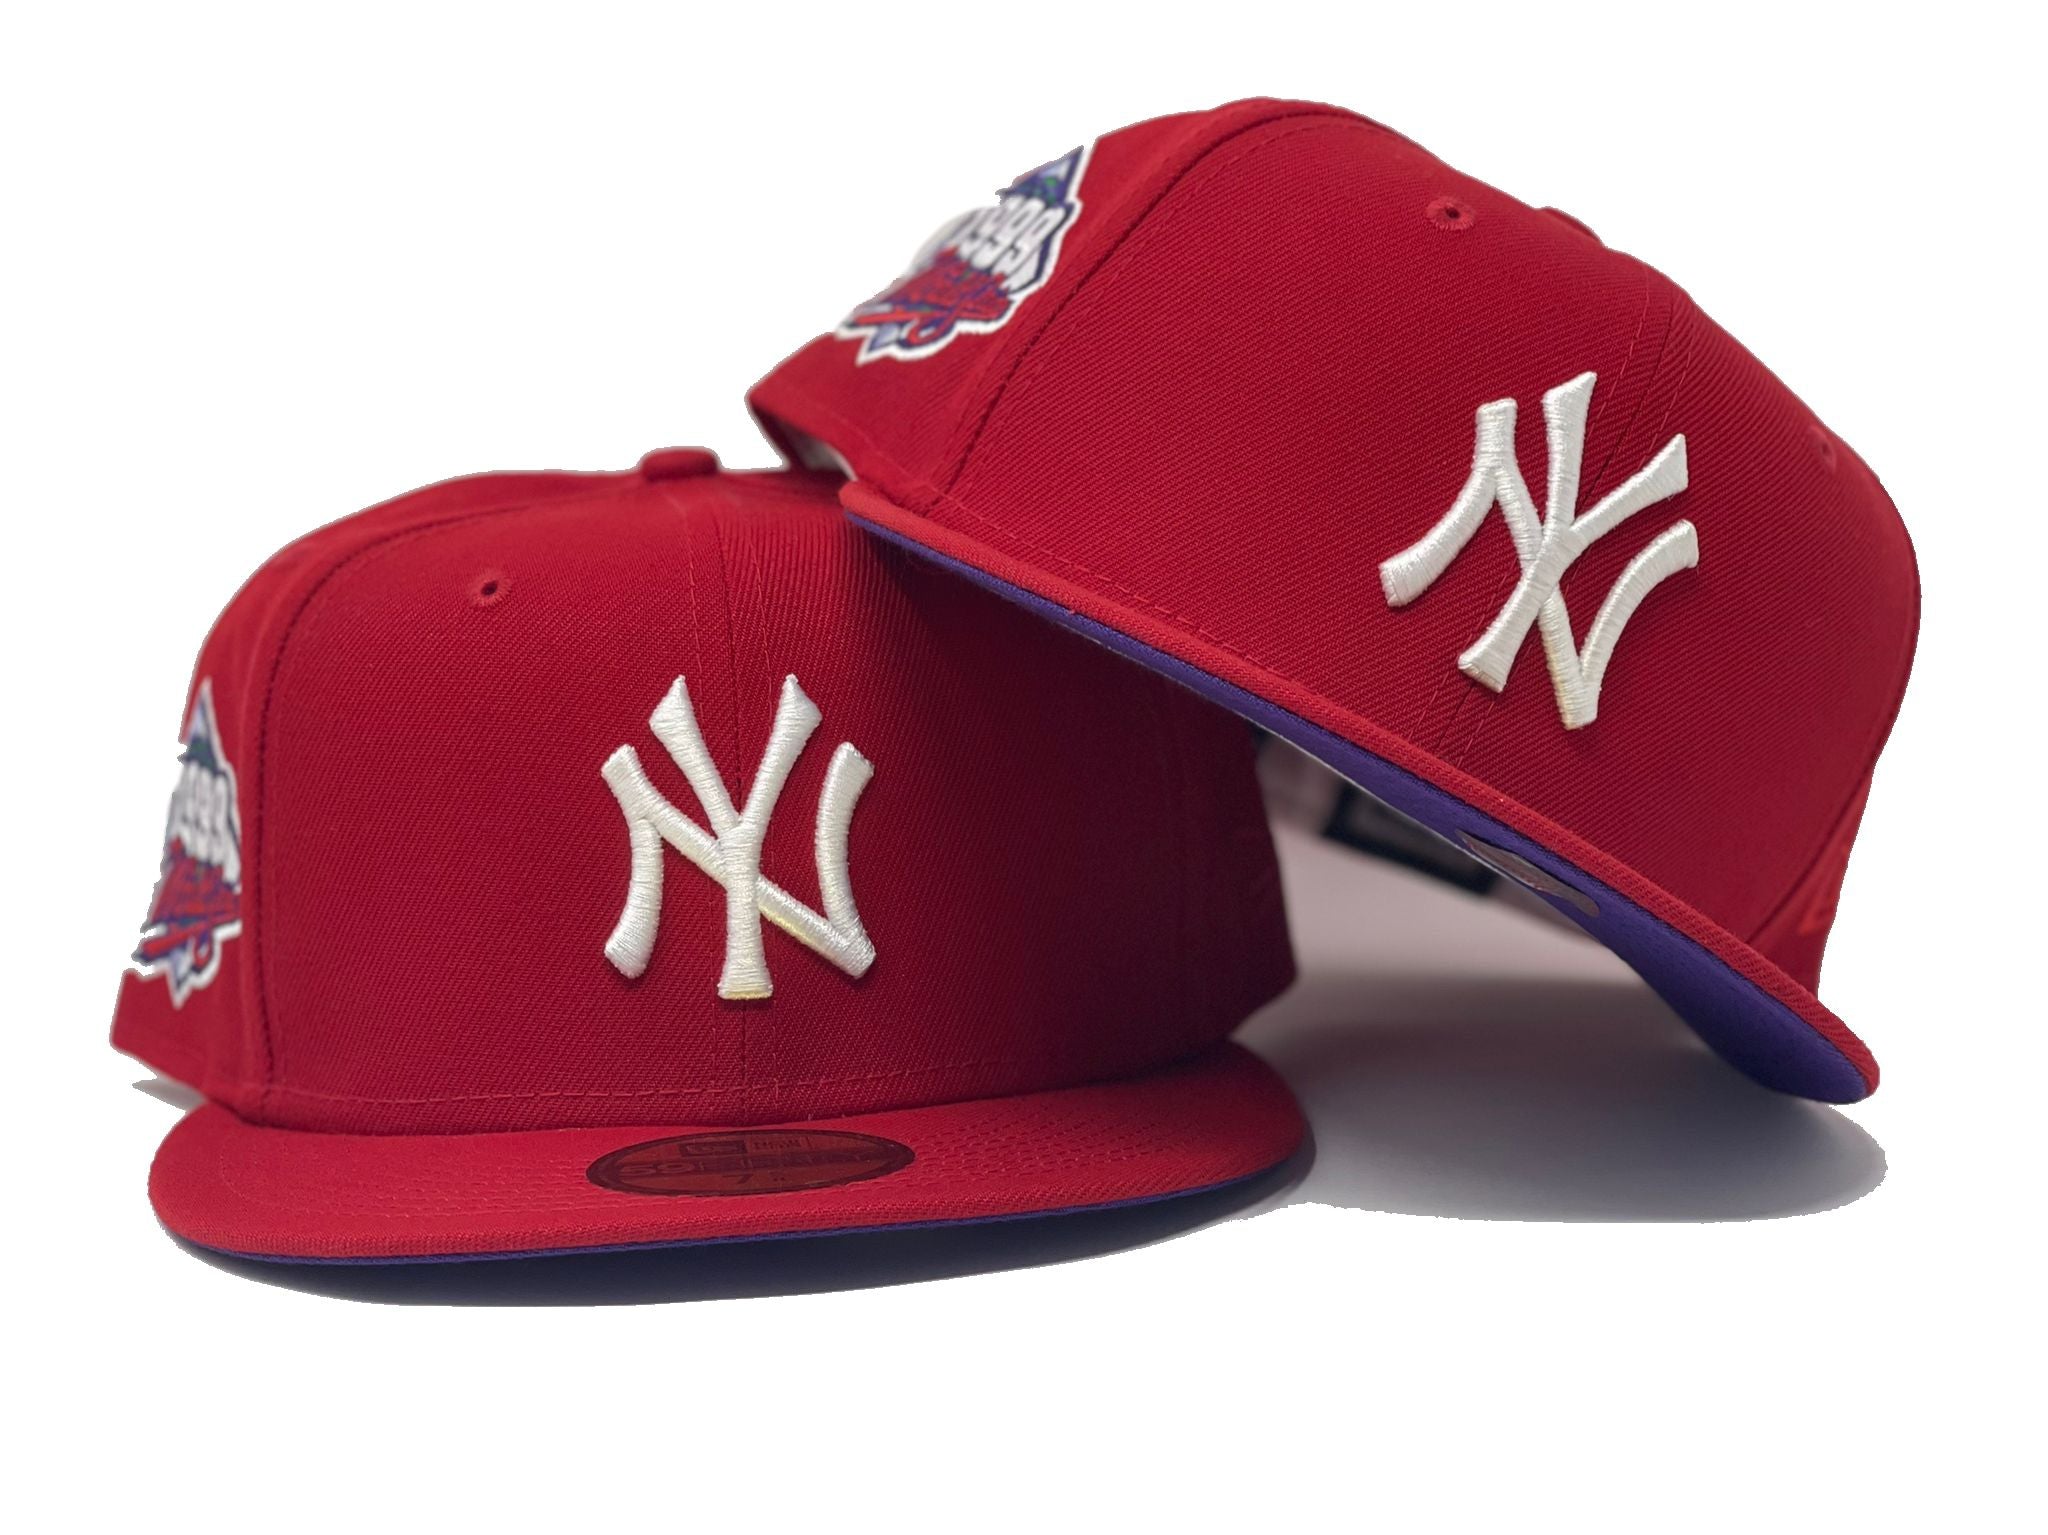 Custom New Era Cap New York Yankees Baseball Cap